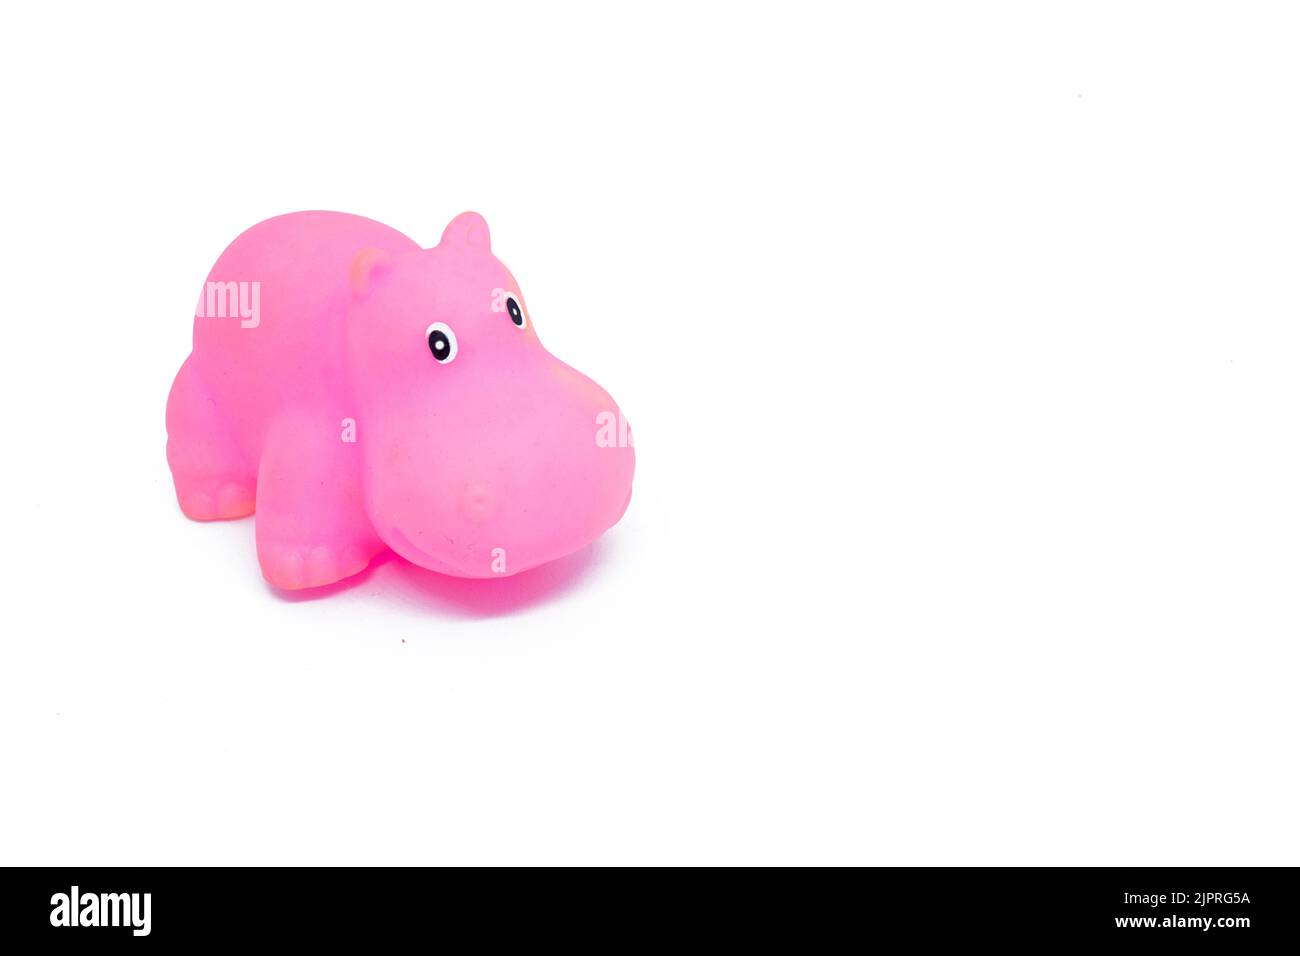 Gros plan d'un jouet hippopotame en plastique de couleur rose isolé sur un fond blanc Banque D'Images